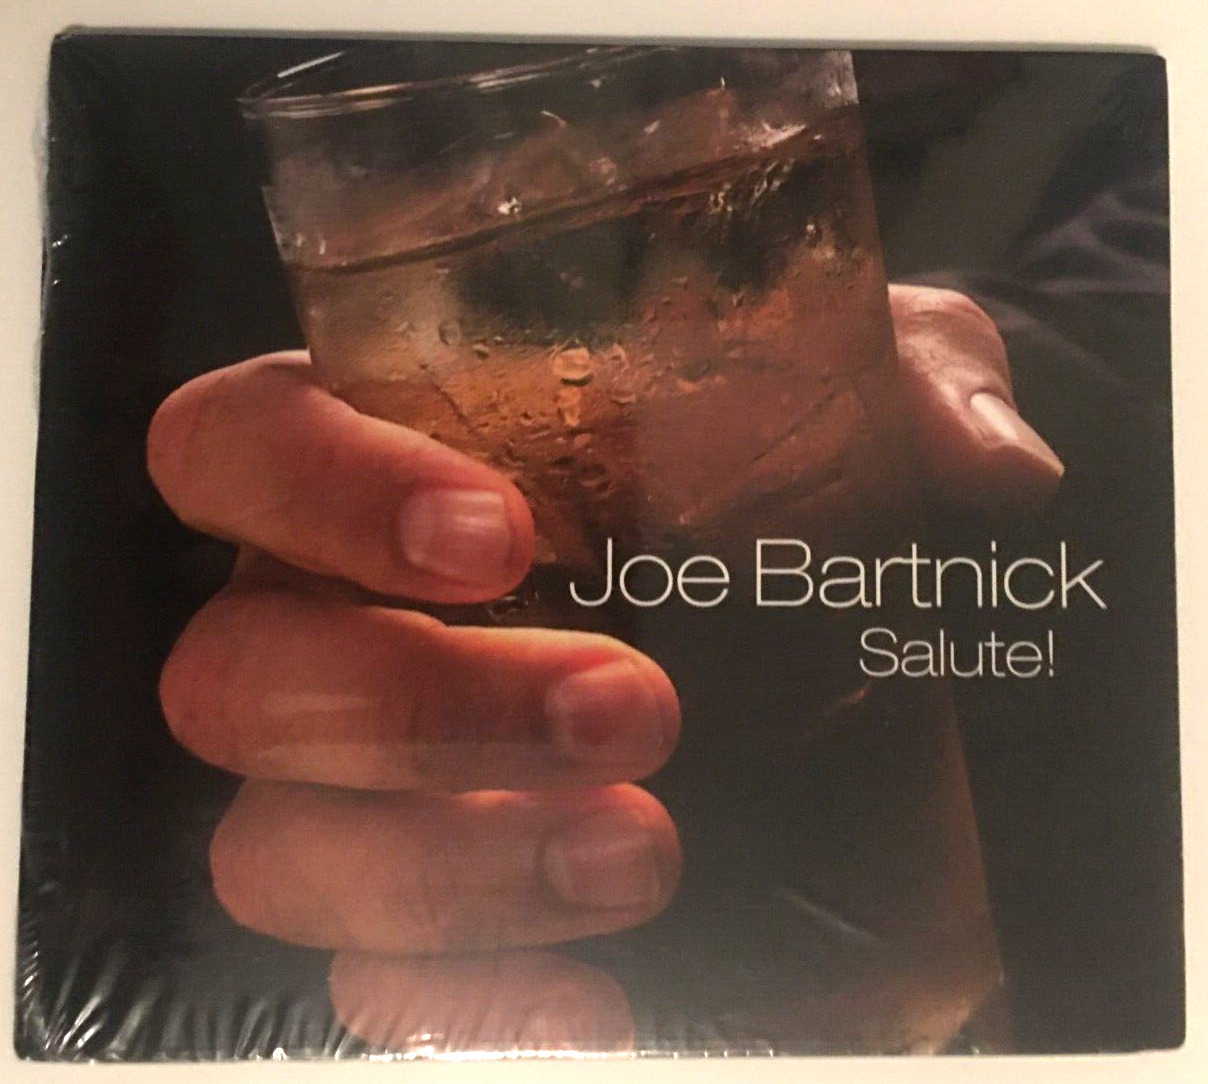 Vintage Joe Bartnick Comedy Album 2012 CD - Salute